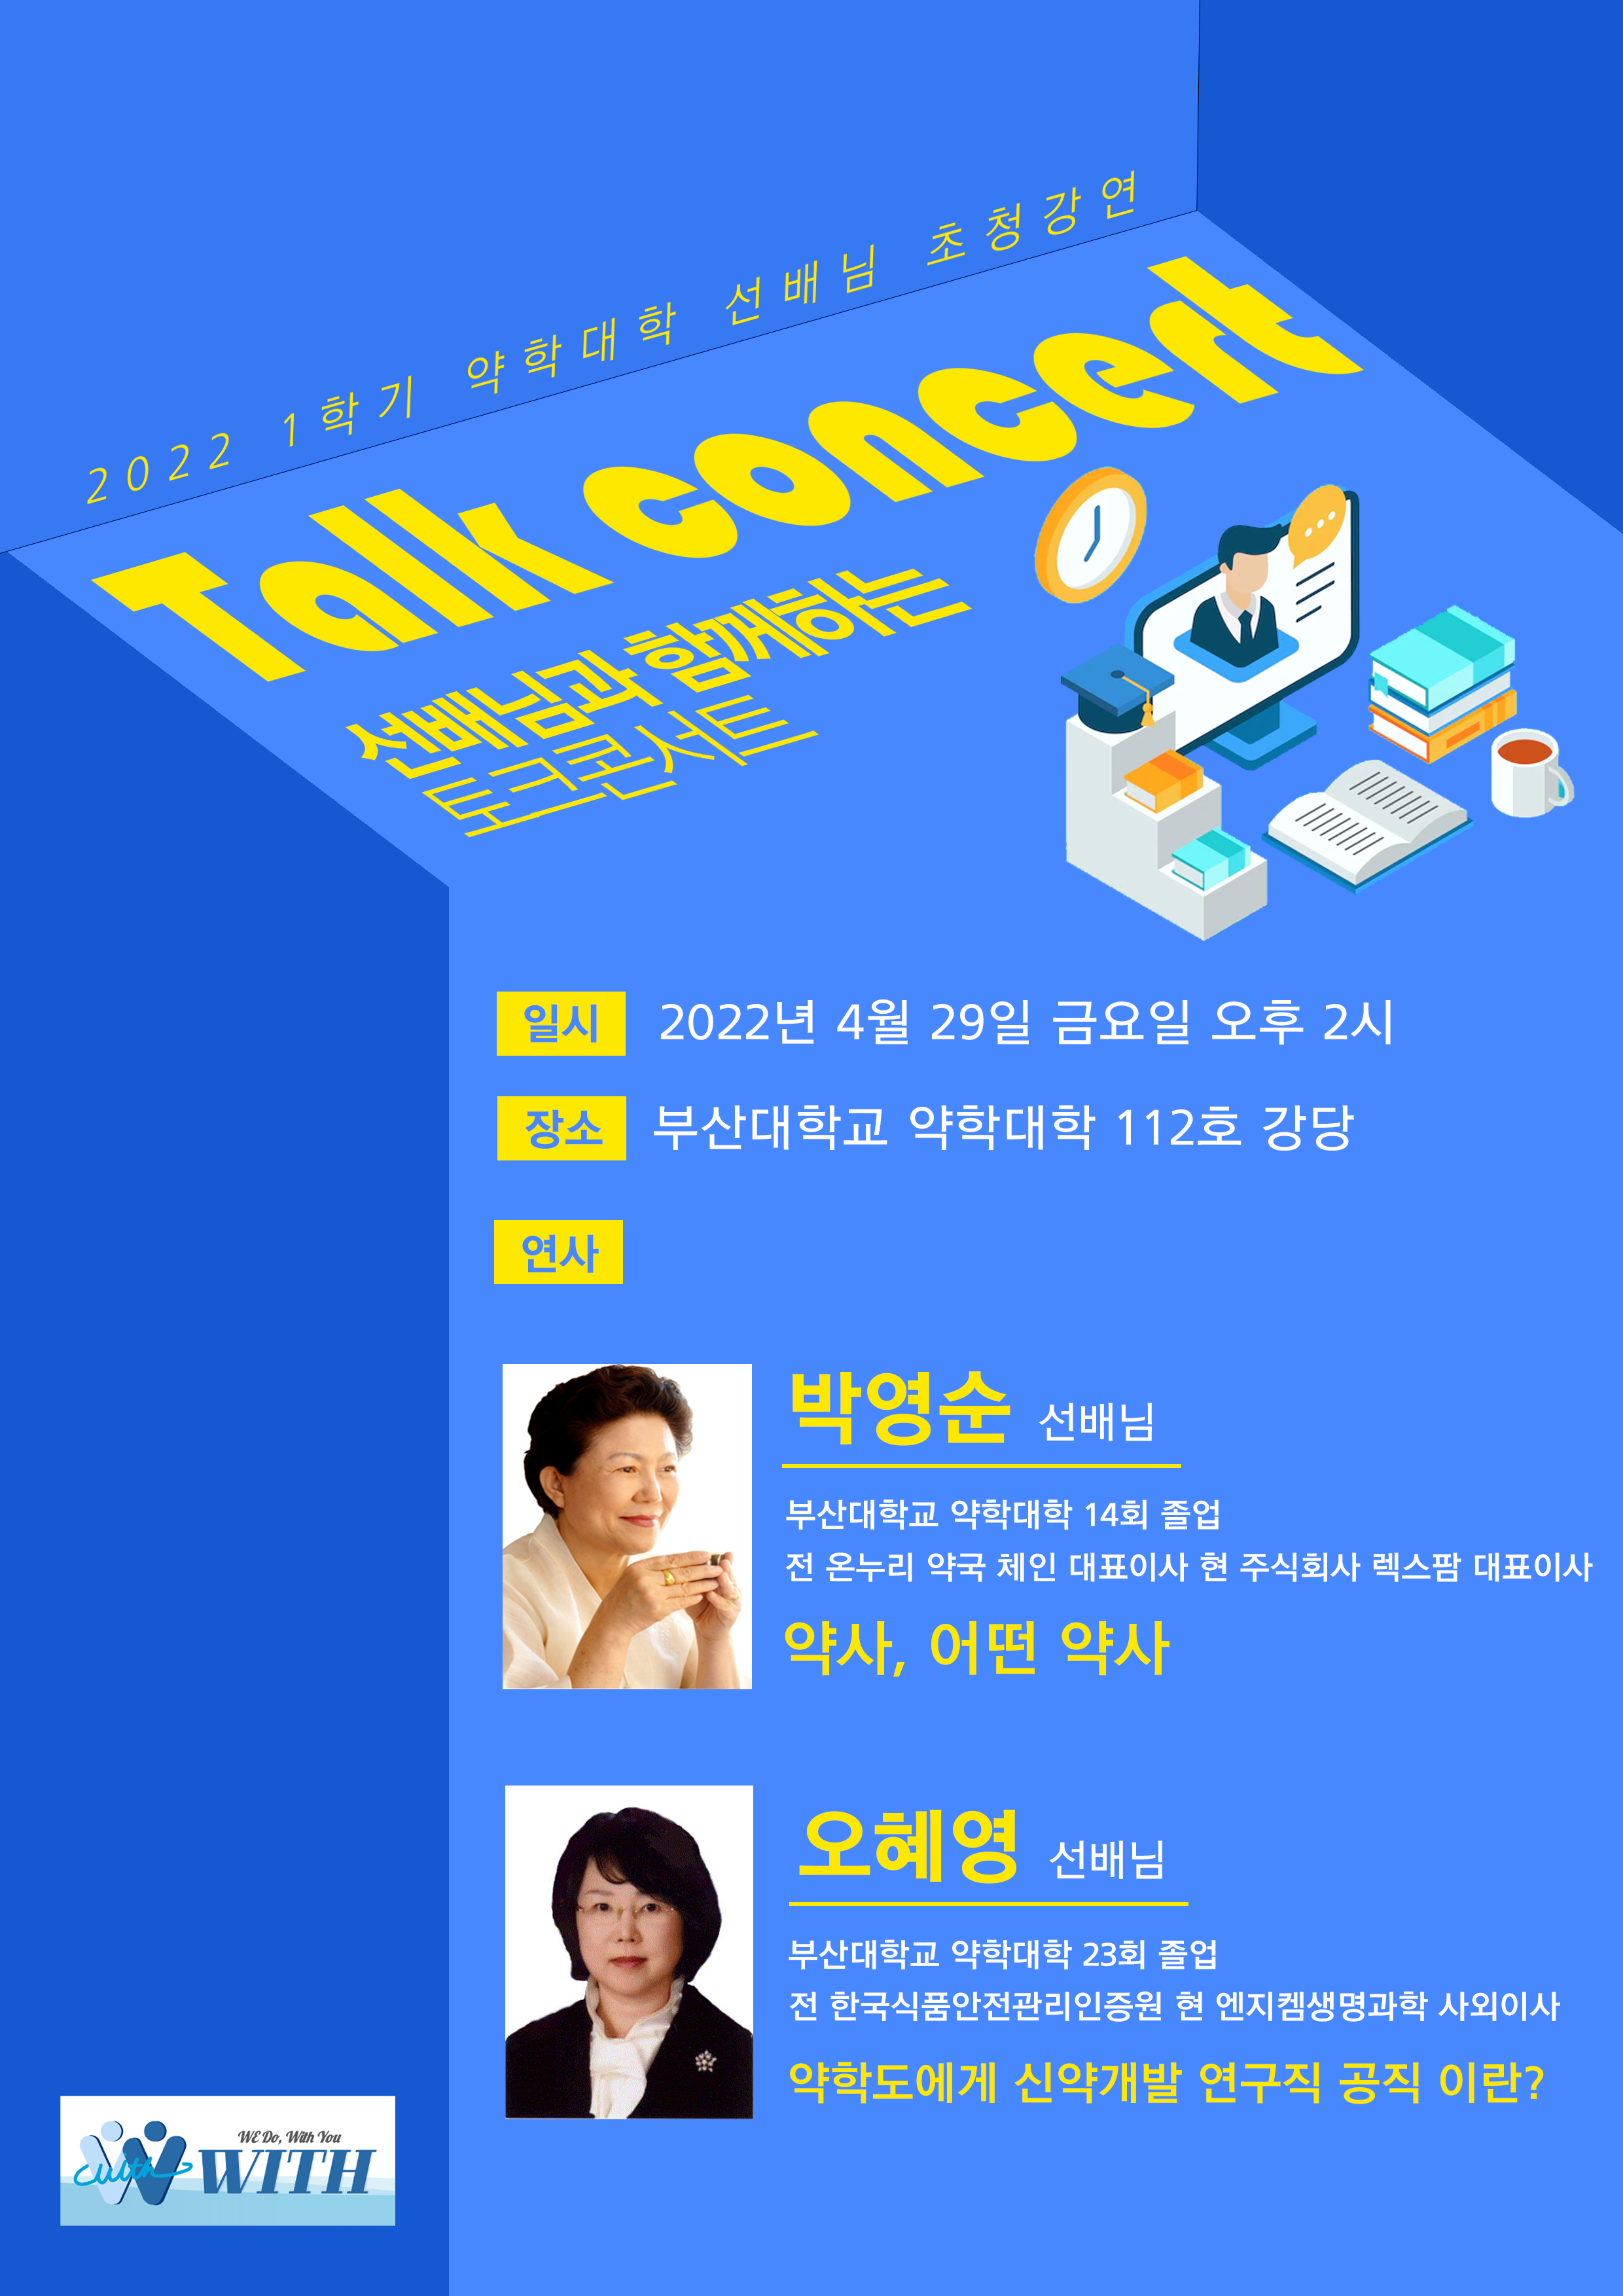 선배님들과 함께하는 토크 콘서트 개최 토크콘서트-20220429.png